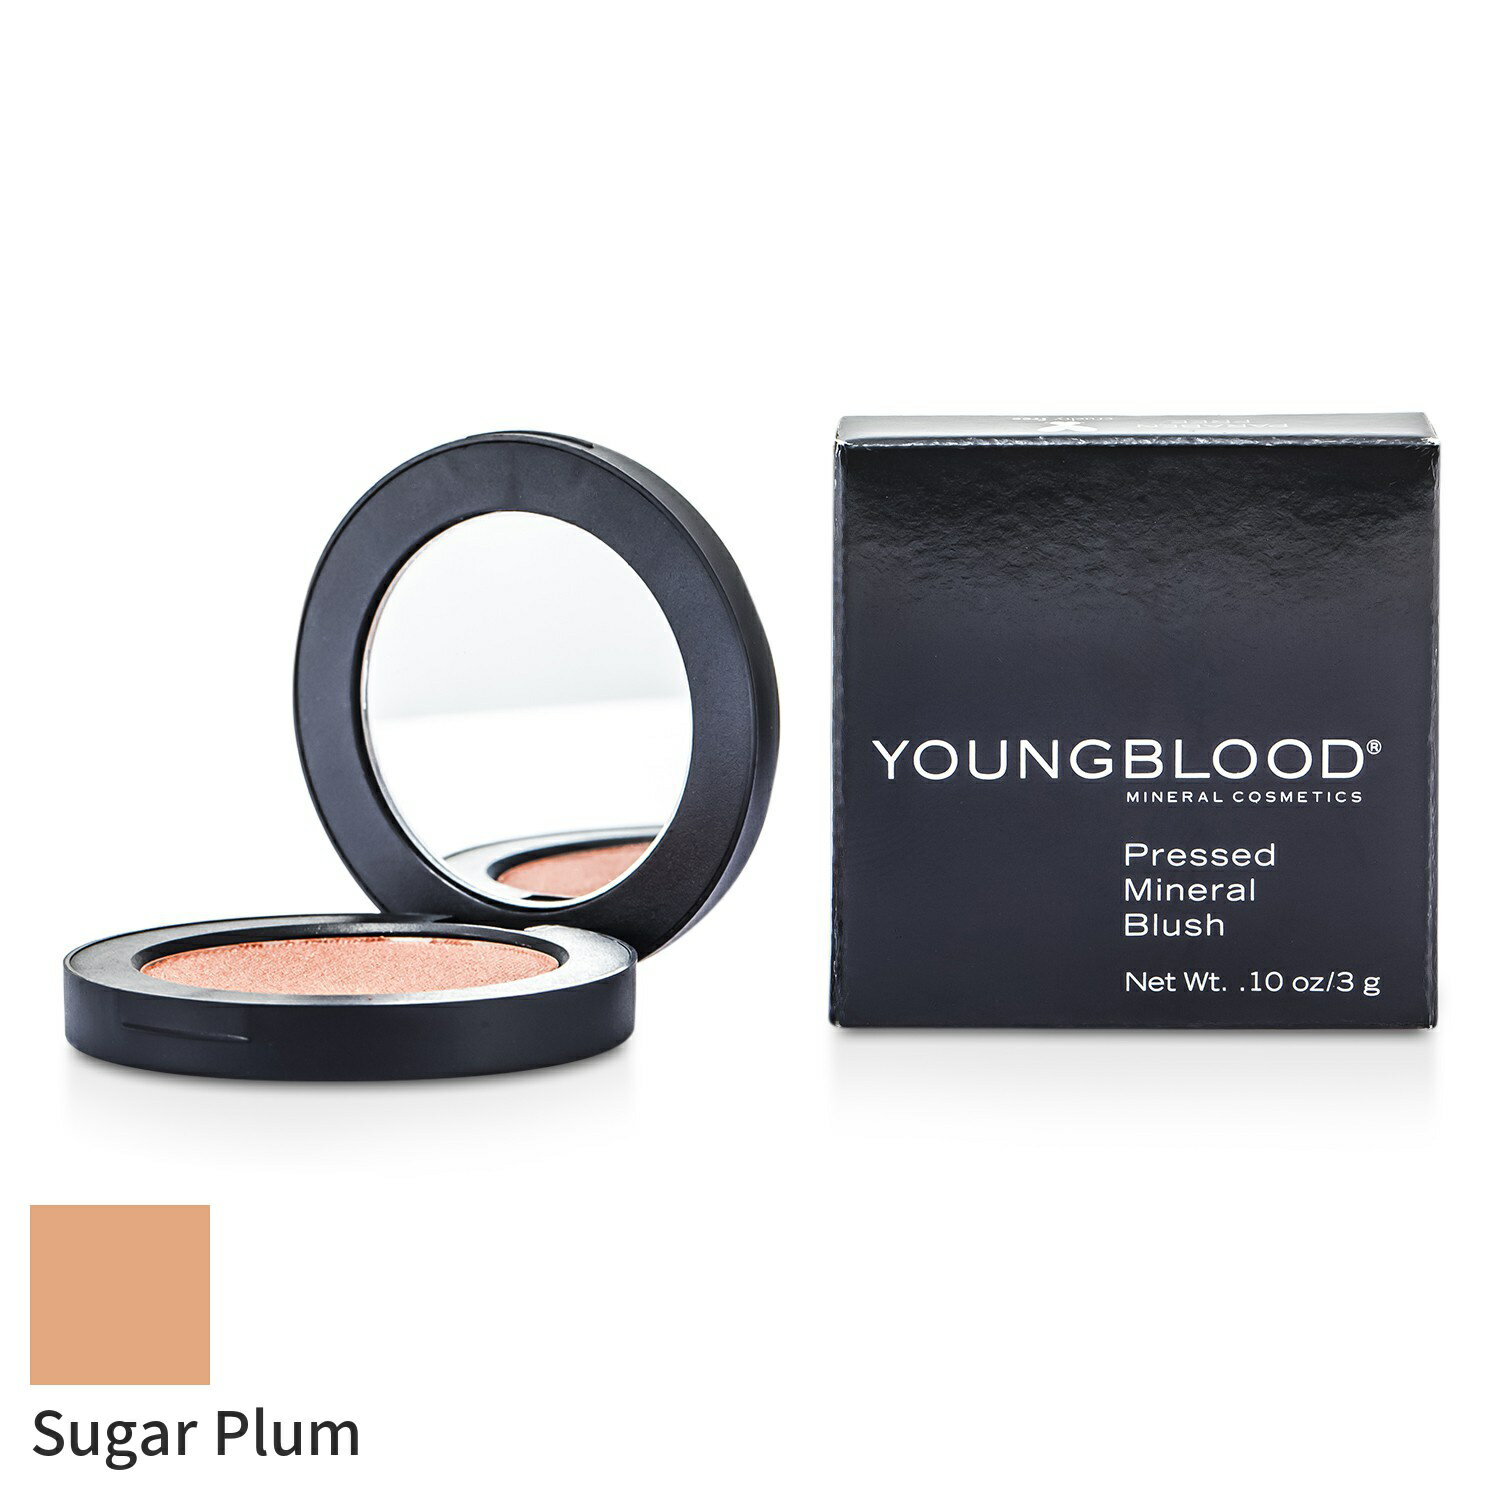 ヤングブラッド チーク Youngblood プレストミネラルブラッシュ - Sugar Plum 3g メイクアップ フェイ..